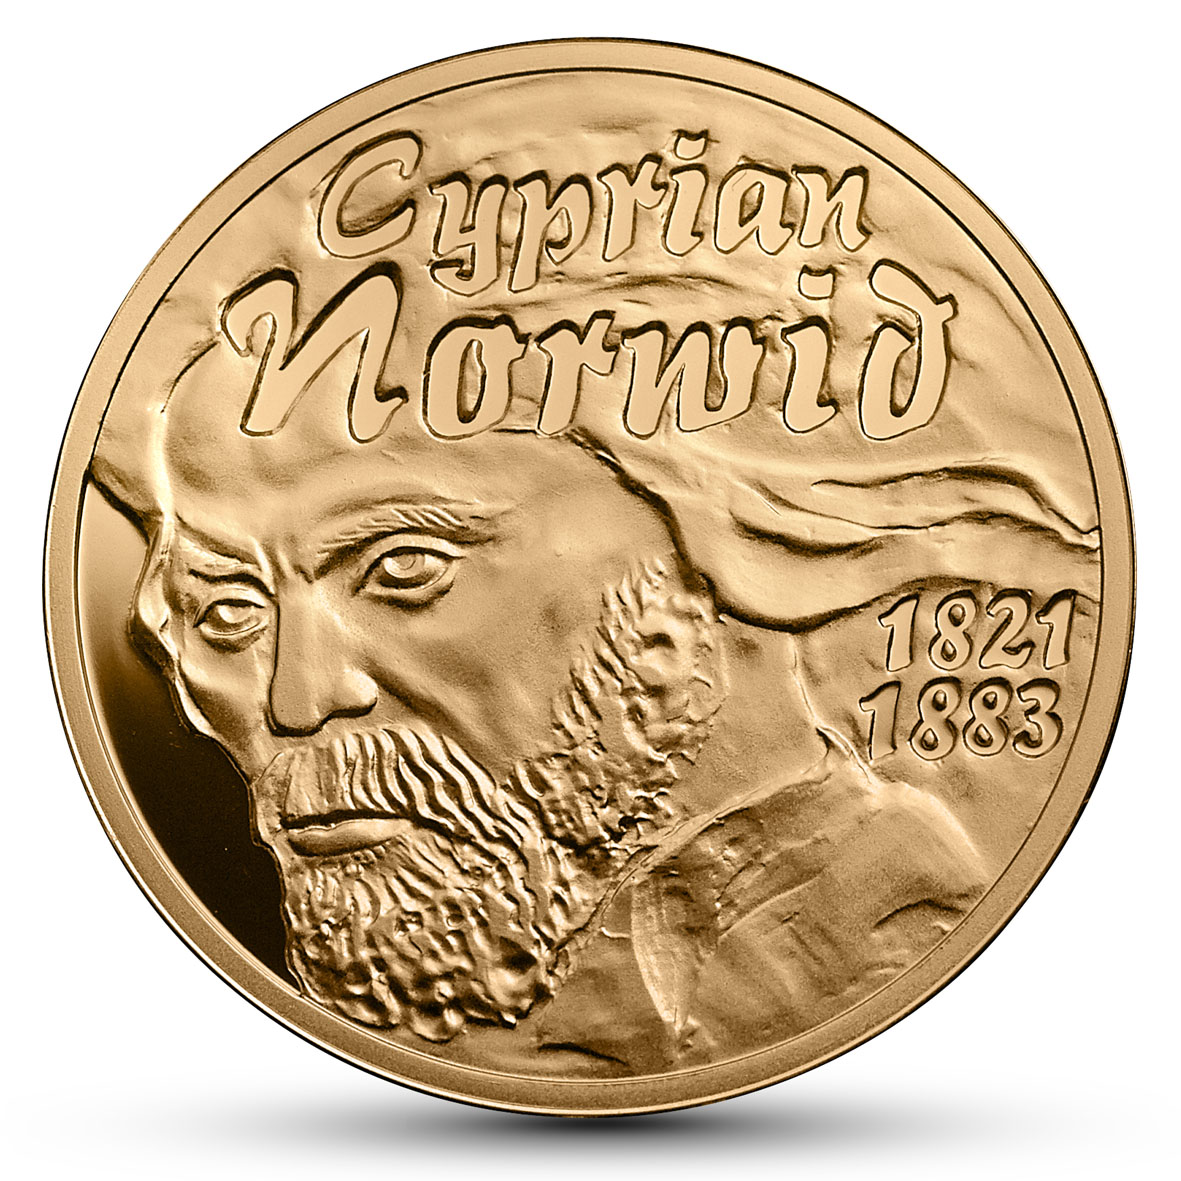 Rewers monety, koloru złotego - widoczna głowa starszego mężczyzny z bujną fryzurą i zarostem i napisy: Cyprian Norwid 1821-1883